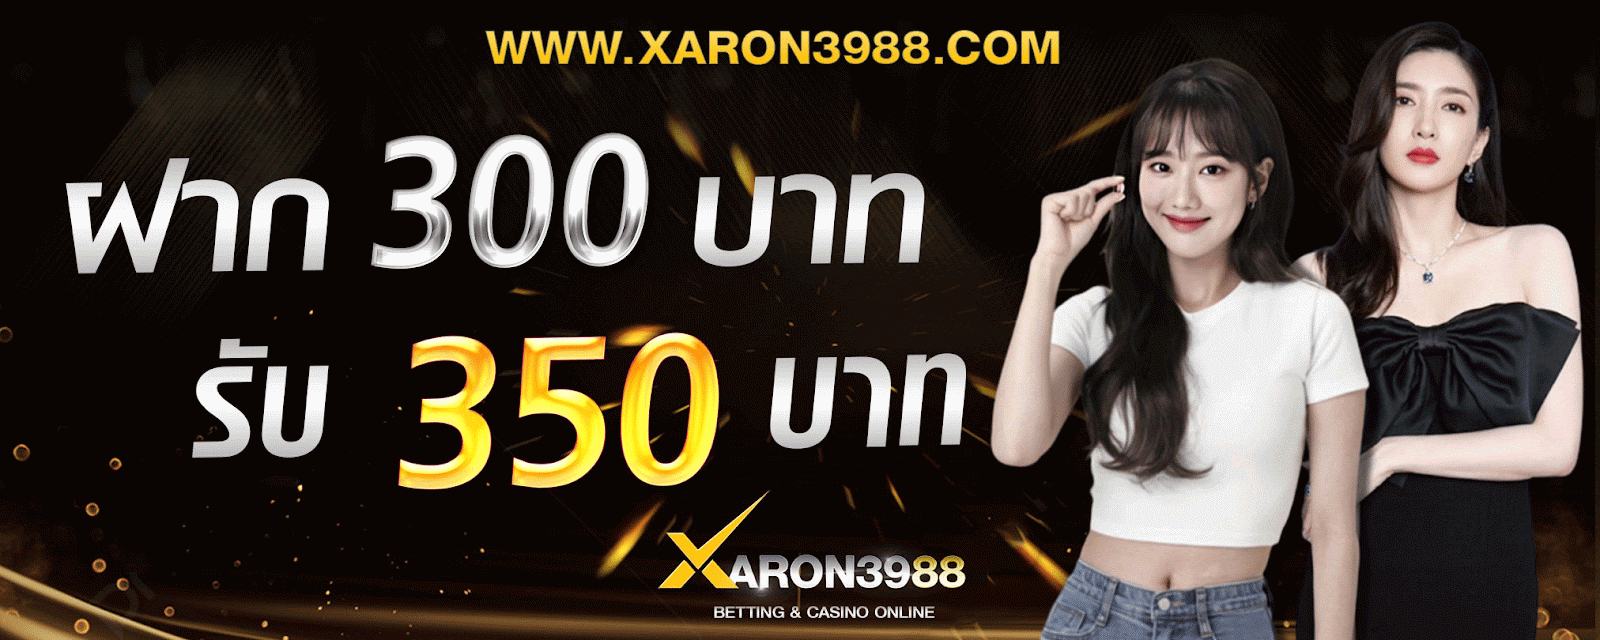 XARON3988